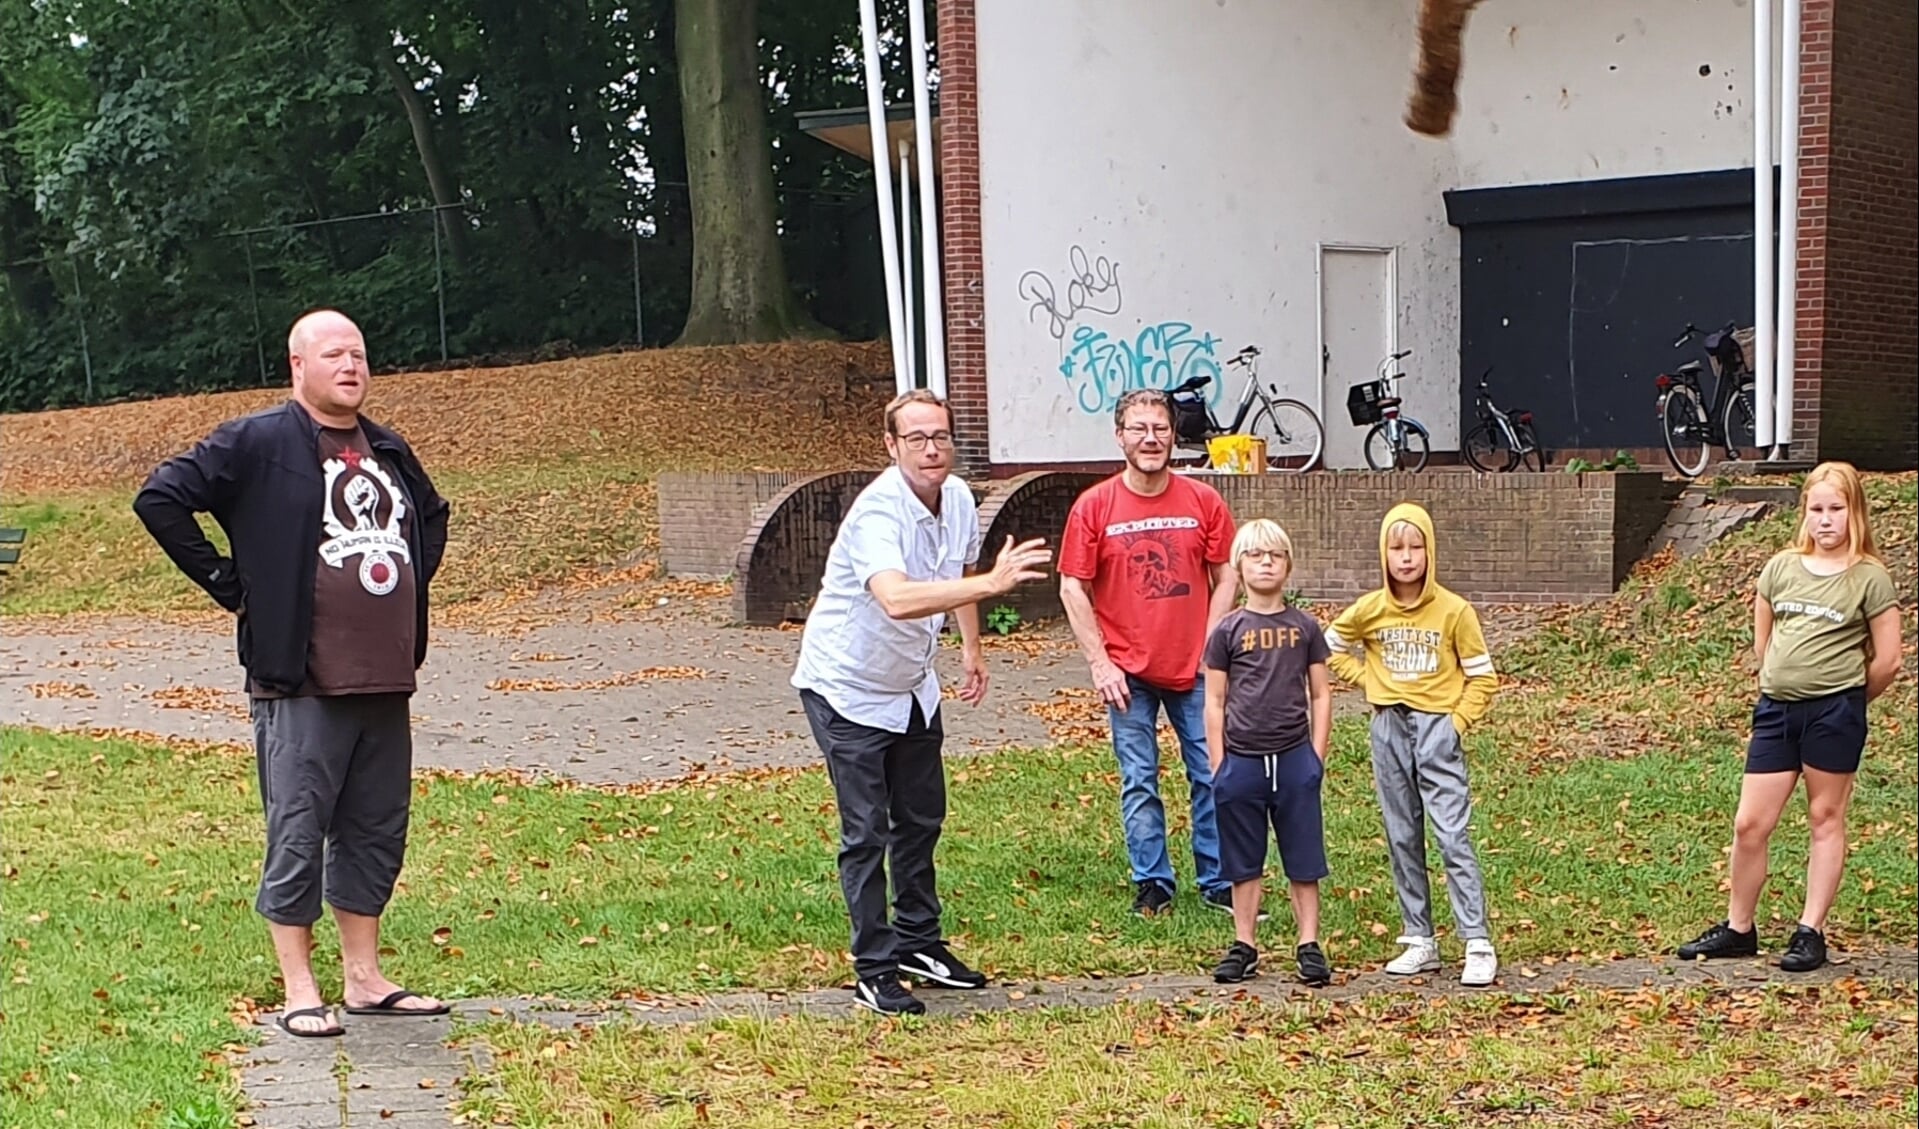 Groep Elsje in actie tijdens hun eigen spelletje blokbal op kermismaandag, 'onder de stange'. Op de achtergrond de verpauperde Muziekkoepel. Foto: Henri Walterbos